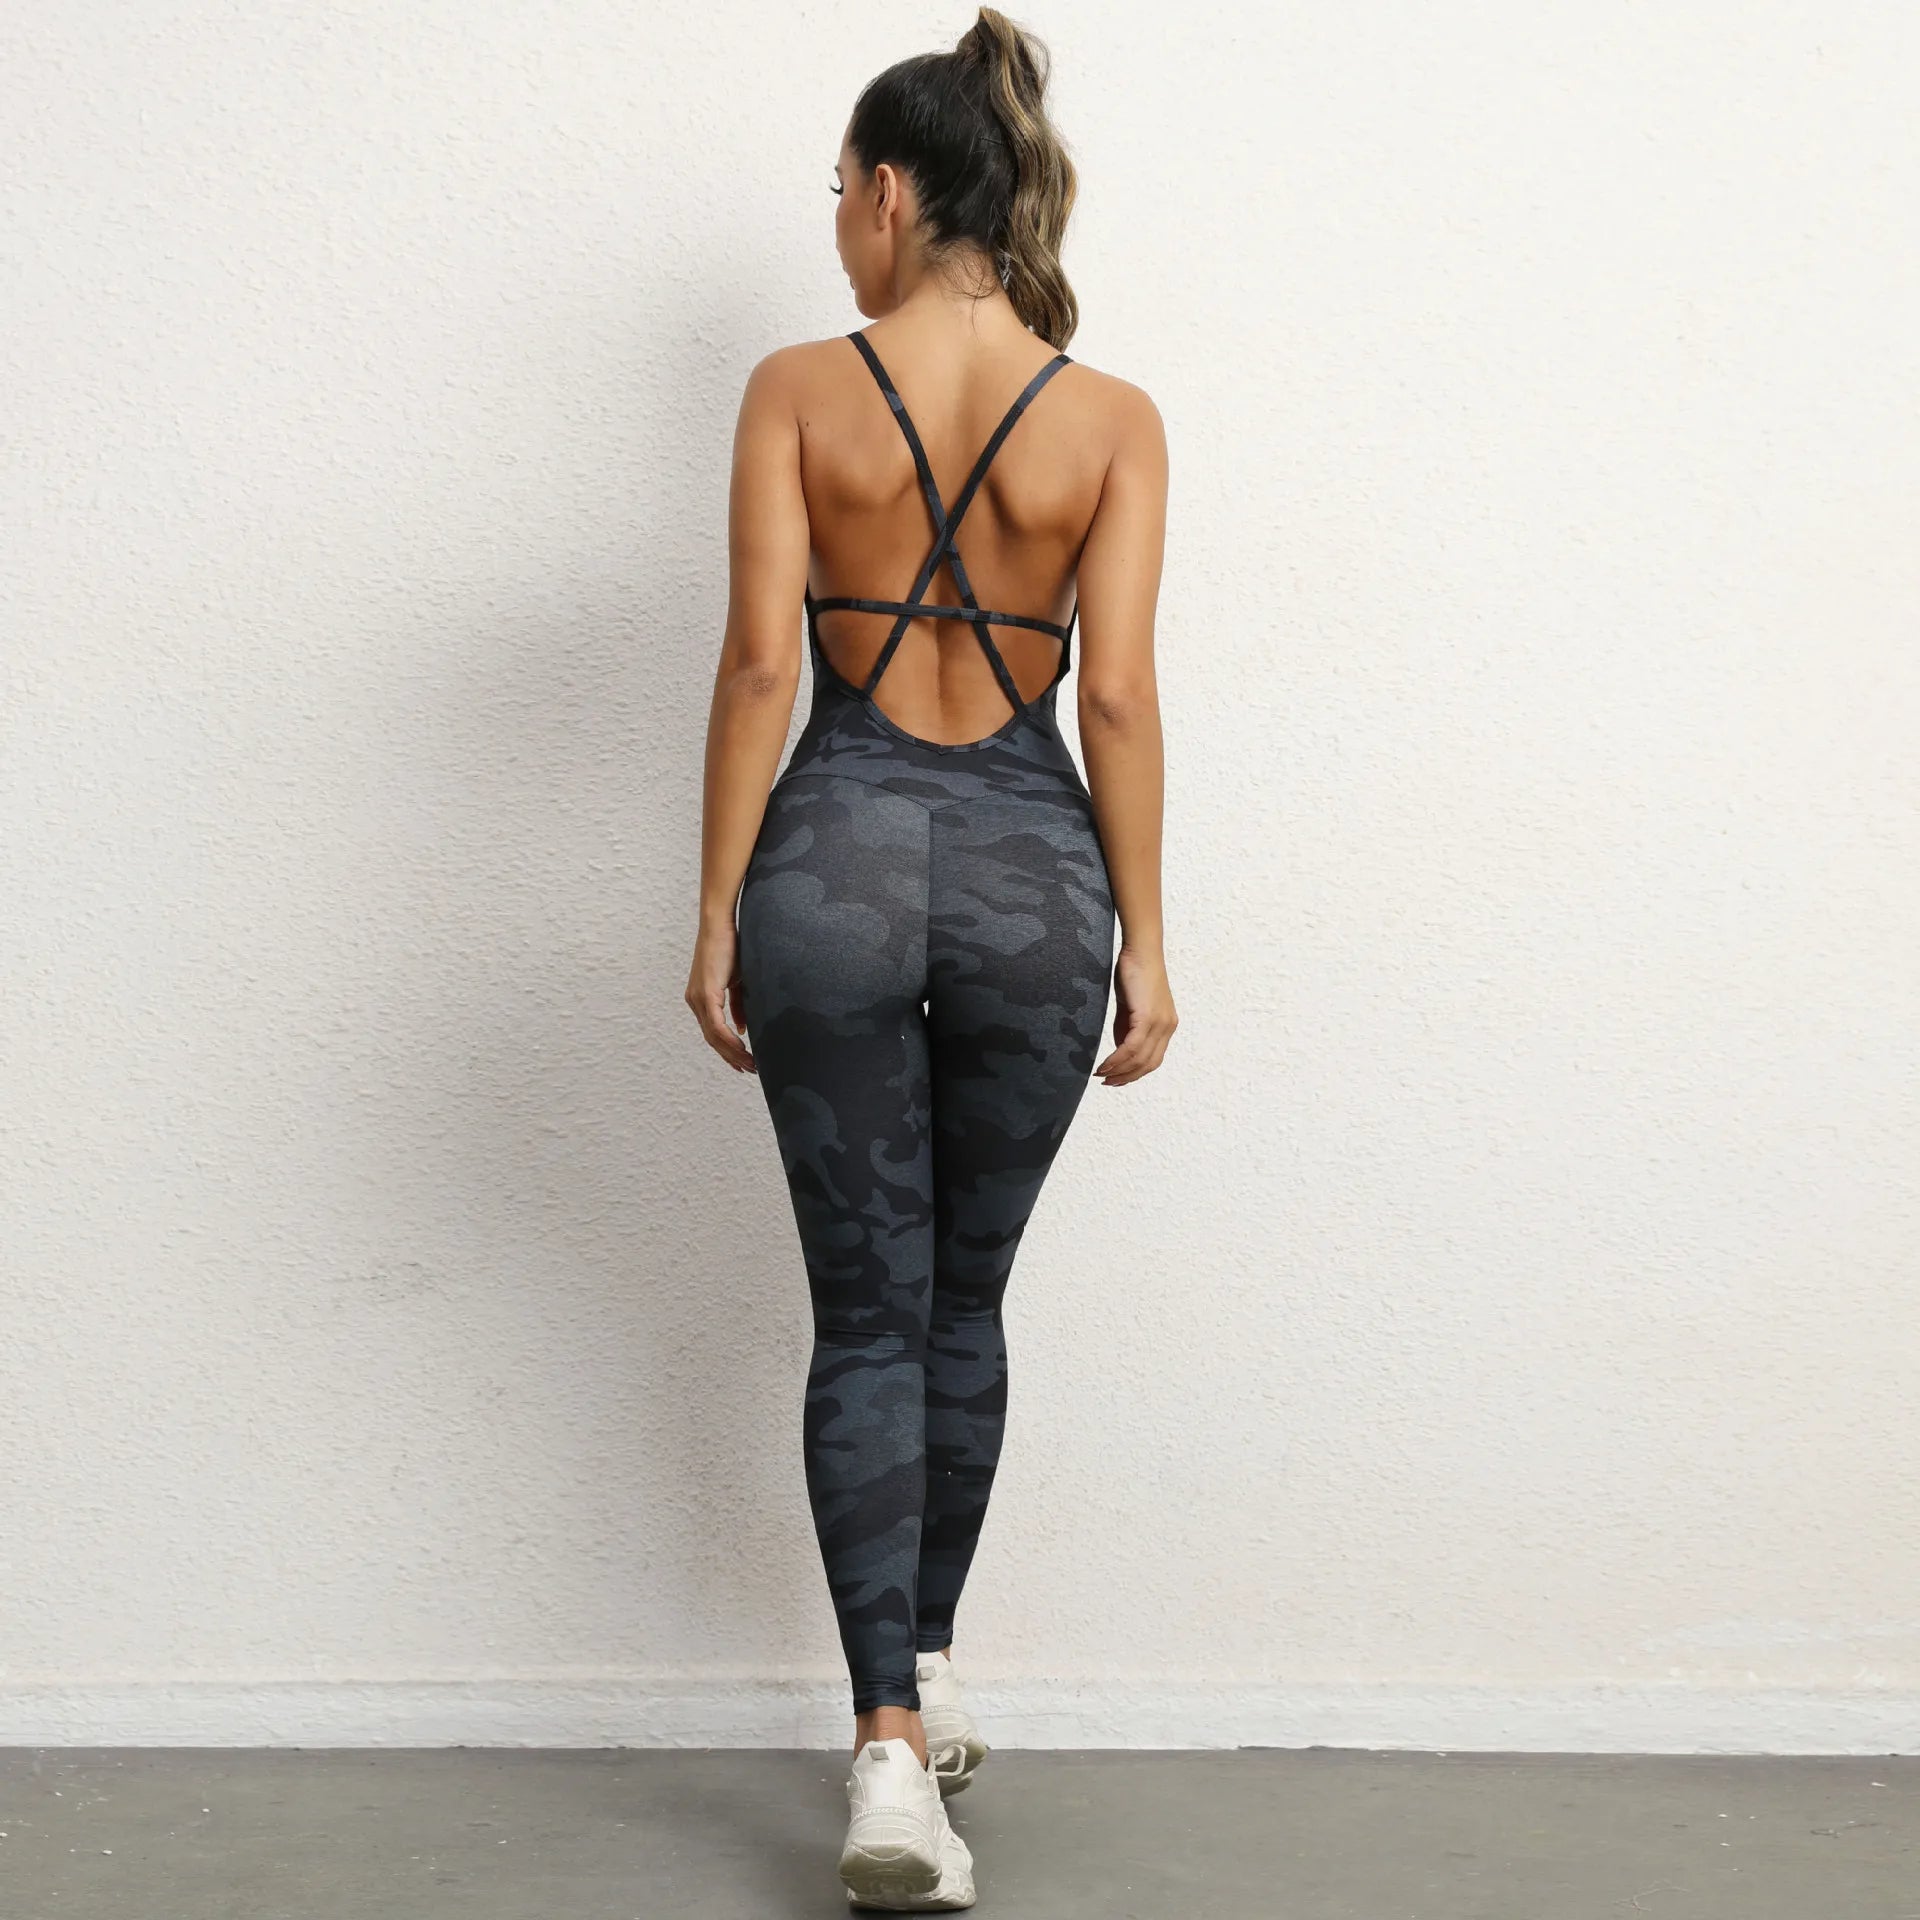 Backless Sporty Jumpsuit: Perfekt För Yoga och Gym - Stil Möter Komfort